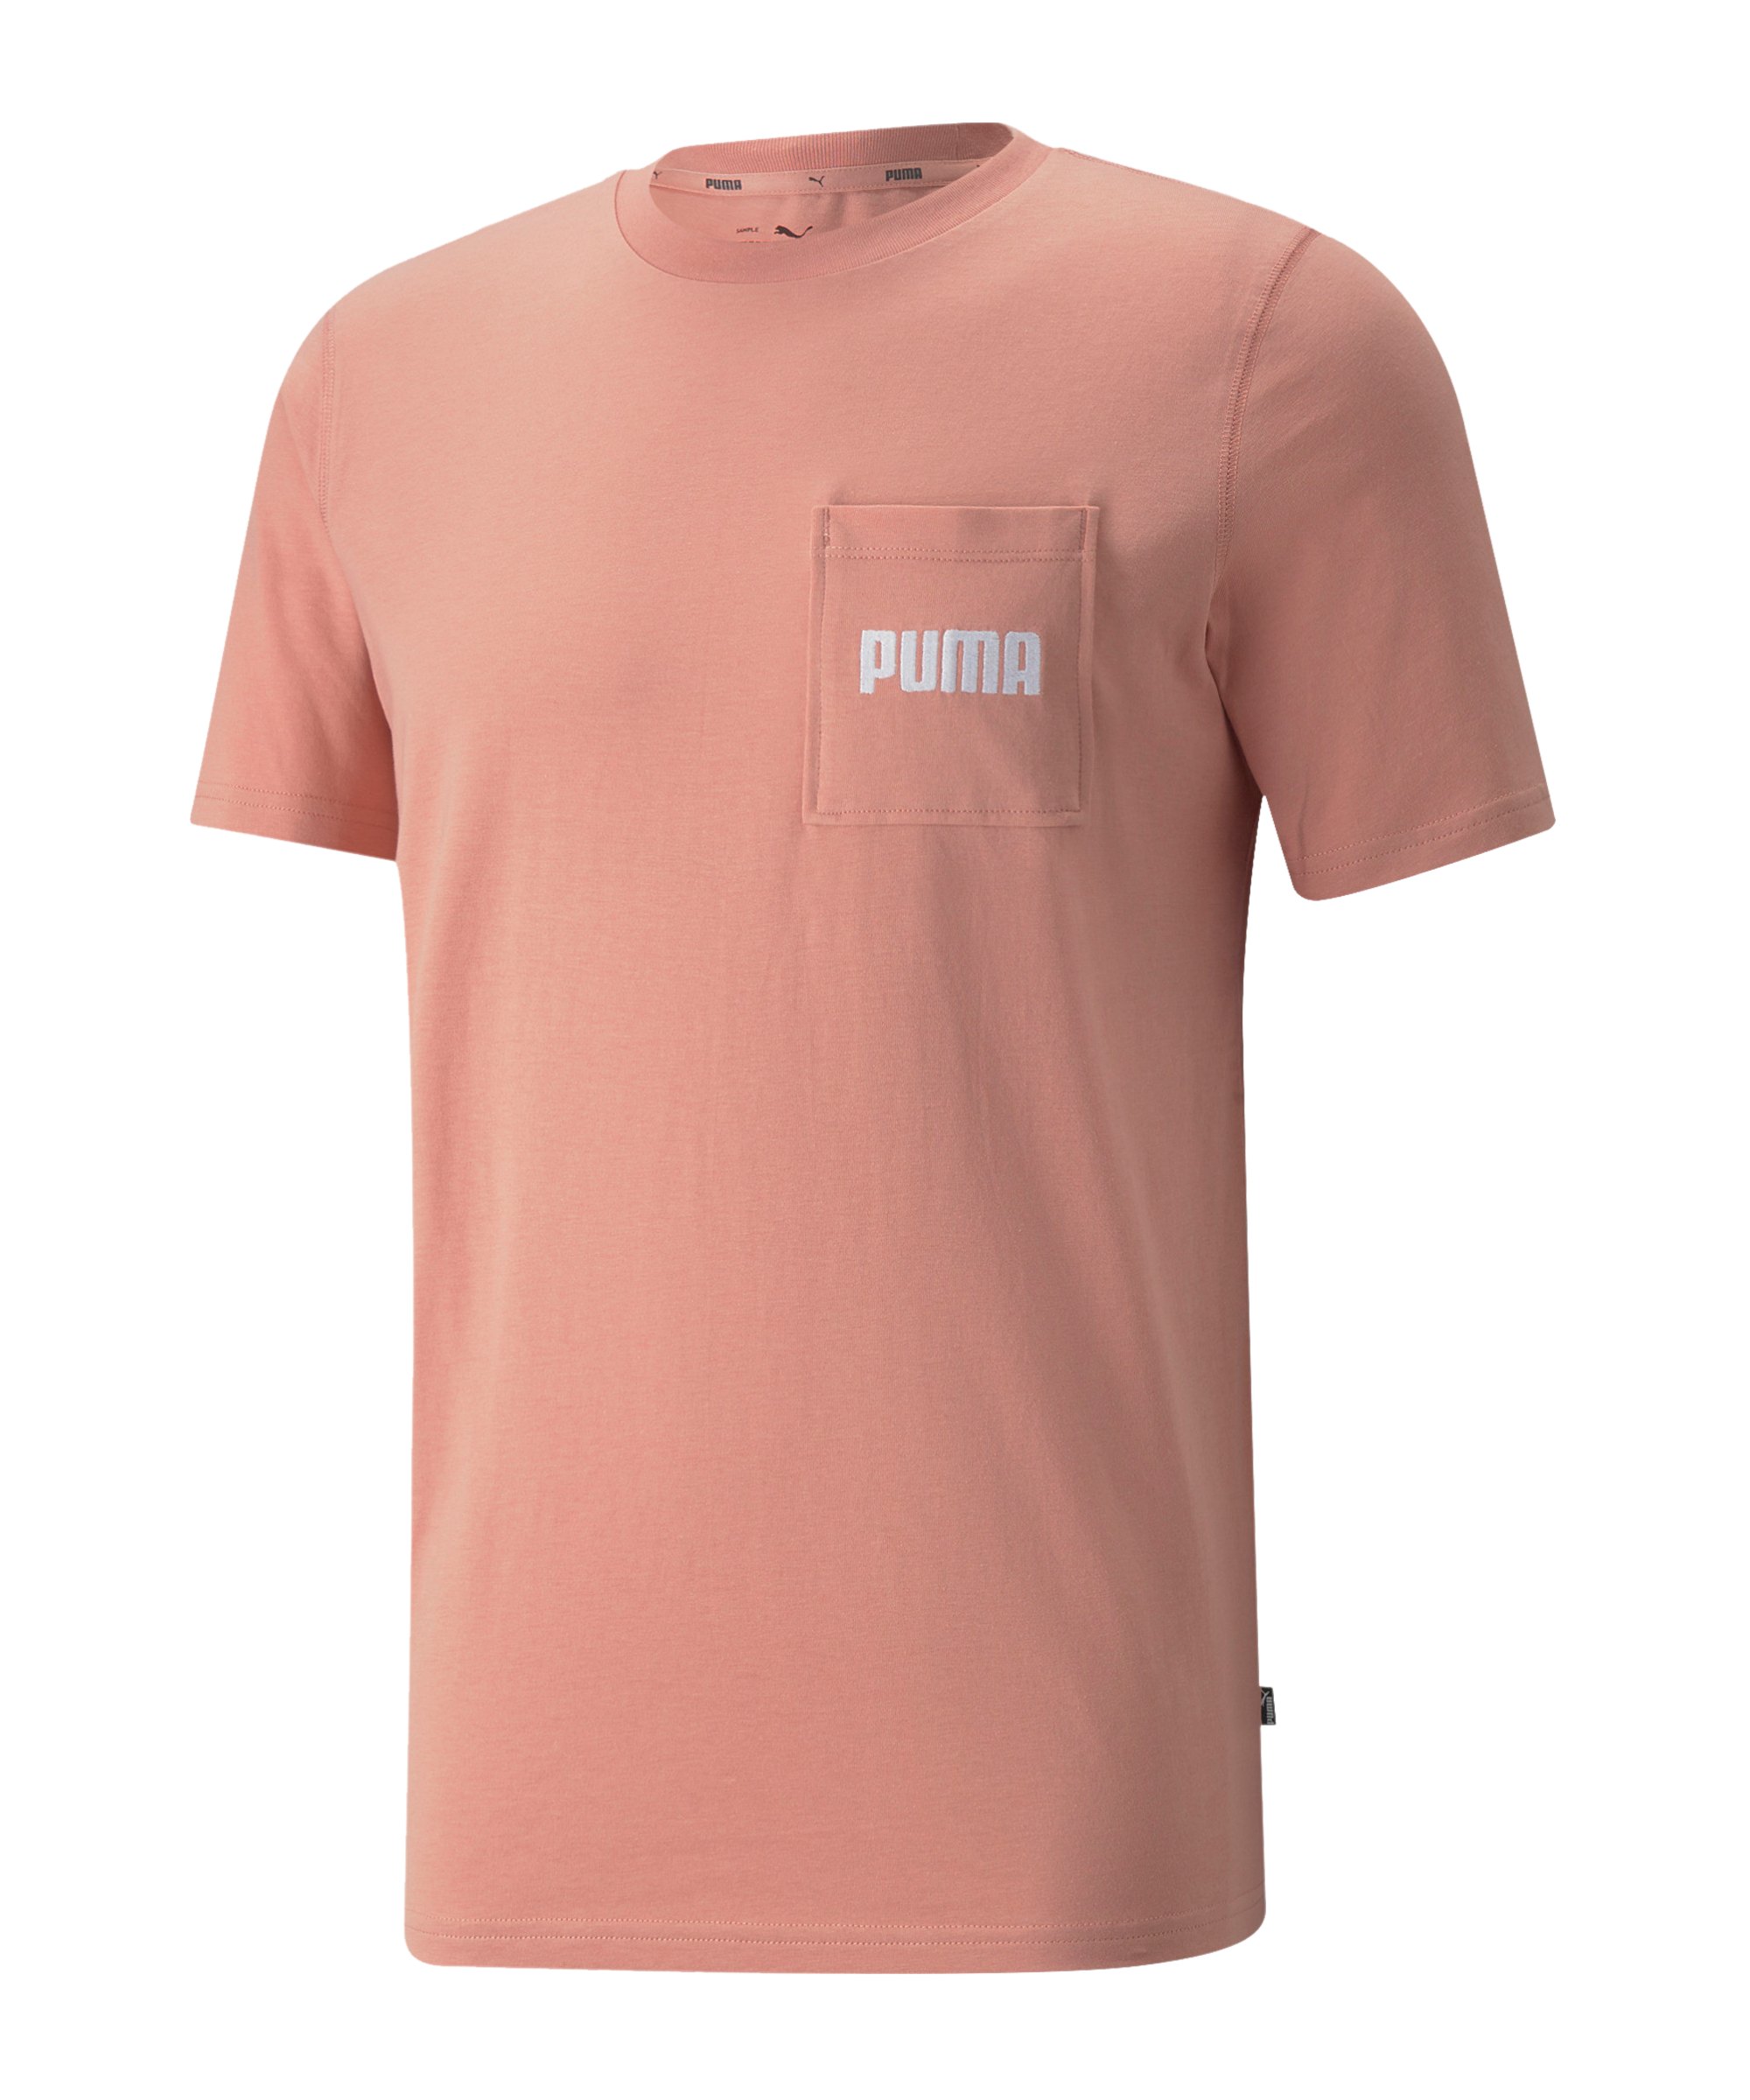 PUMA Modern Basics Pocket T-Shirt Rosa F24 - rosa